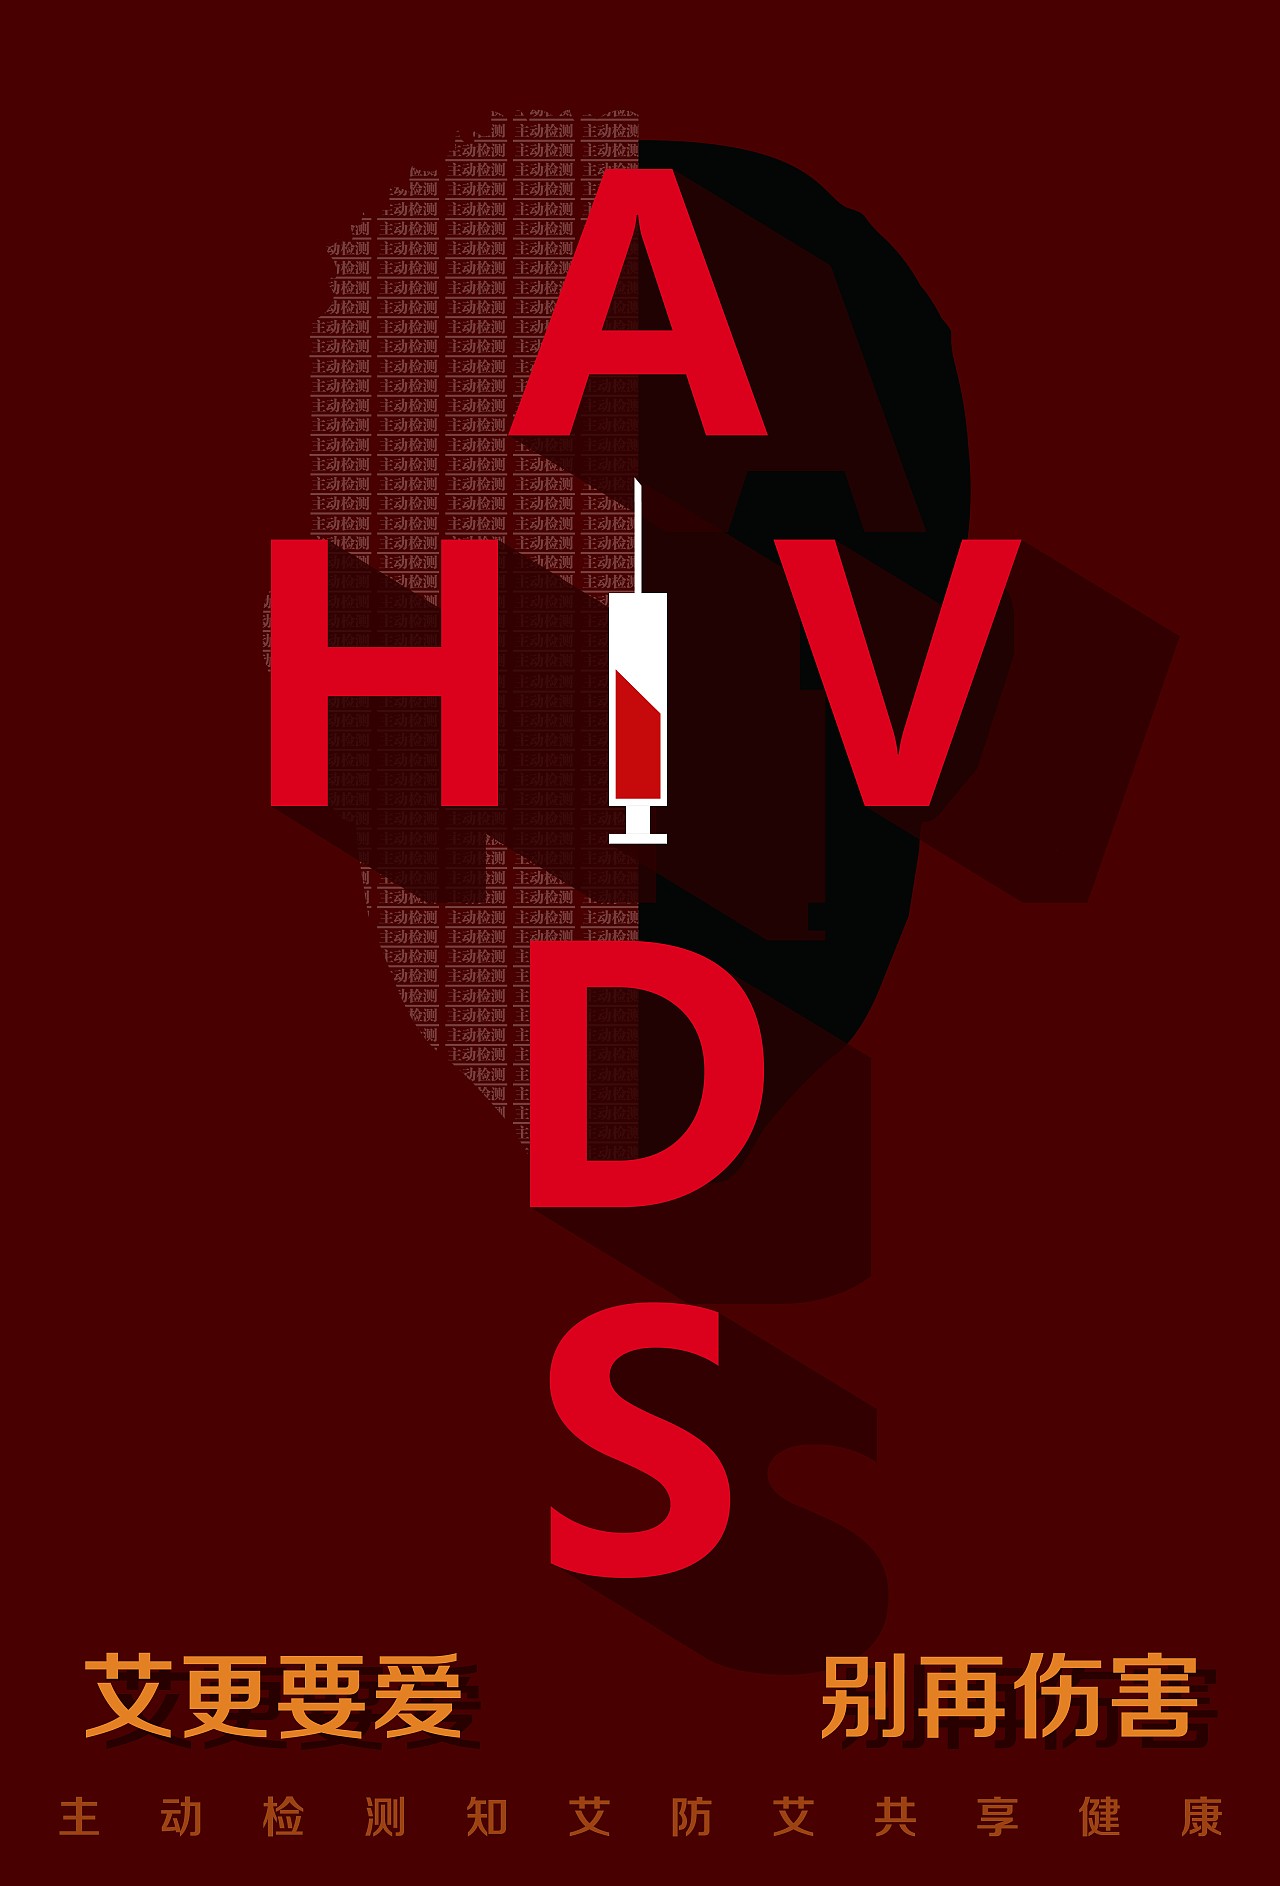 艾滋病传播途径图片大全-艾滋病传播途径高清图片下载-觅知网